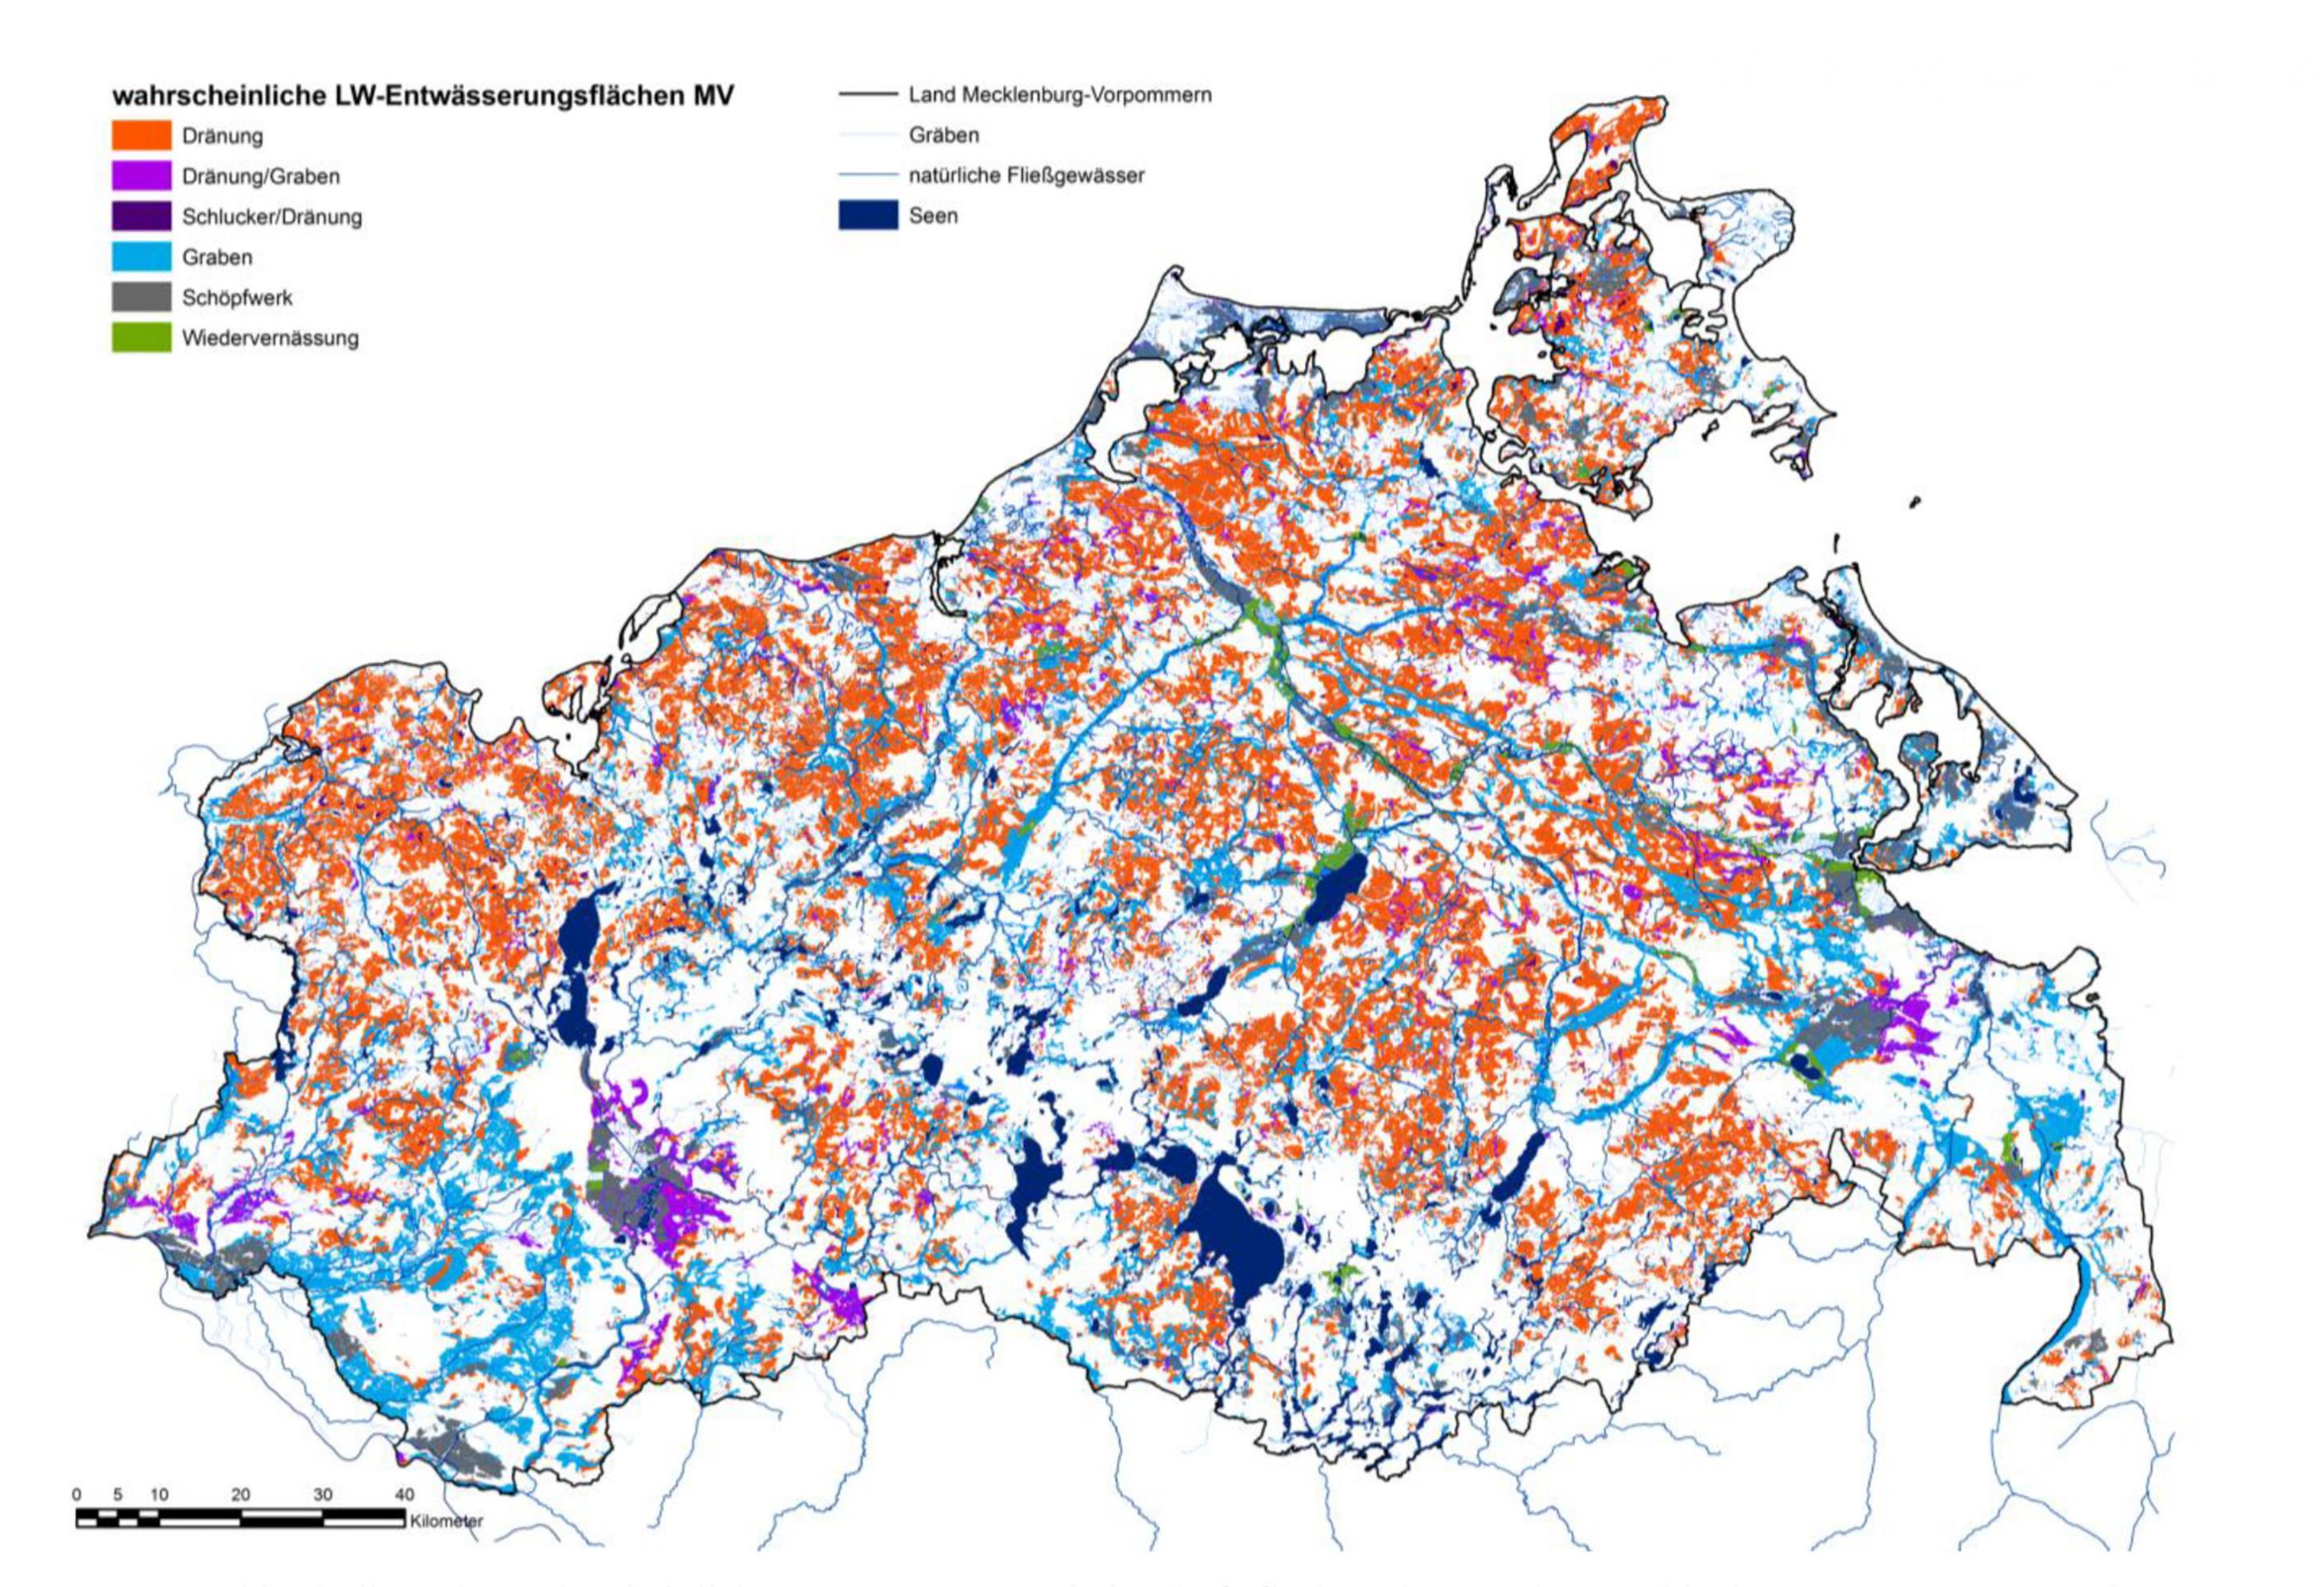 Karte von Mecklenburg-Vorpommern, in der entwässerte landwirtschaftliche Flächen in verschiedenen Farben markiert sind. Die Karte ist in dem Fachaufsatz „Ermittlung von Art und Intensität künstlicher Entwässerung von landwirtschaftlichen Nutzflächen in Mecklenburg-Vorpommern“ erschienen, der im Internet abrufbar ist.